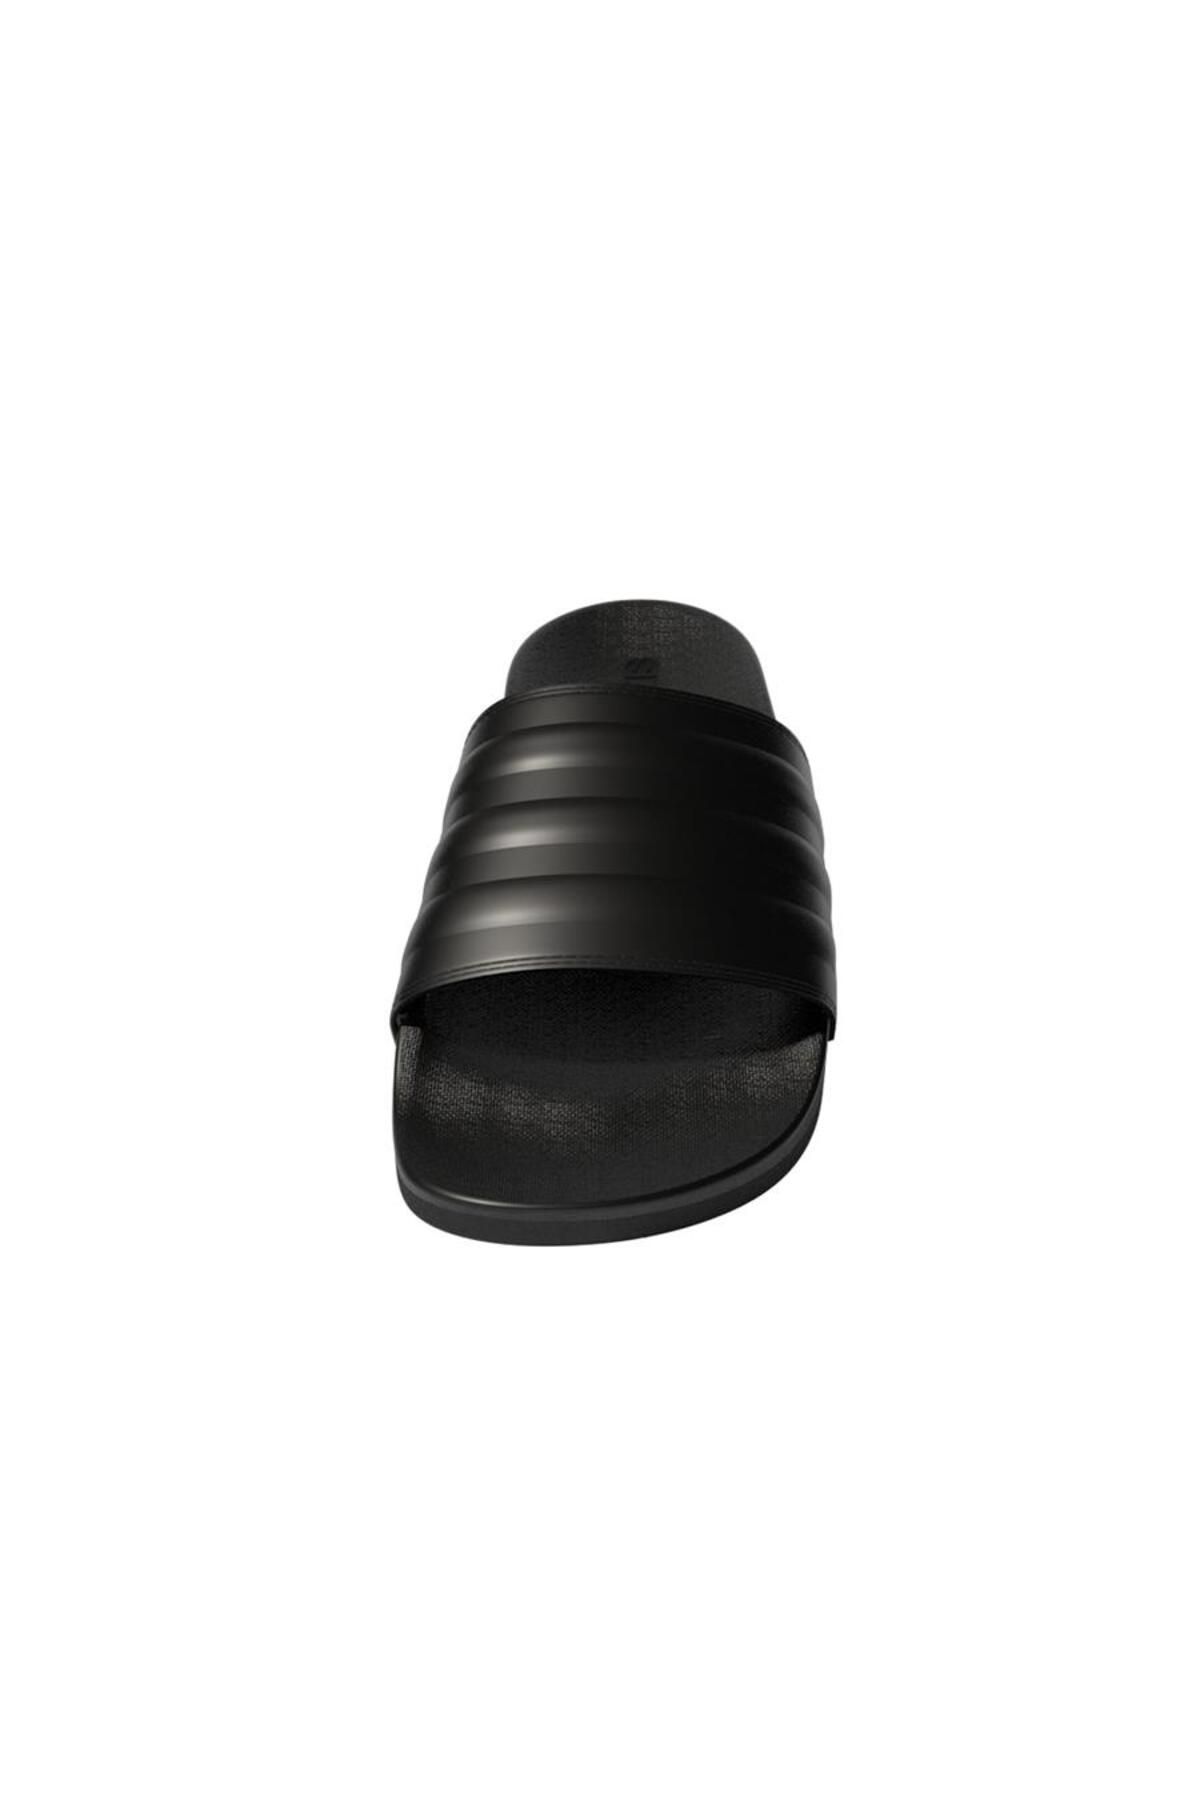 adidas دمپایی سیاه آدلت راحتی (GZ5896)